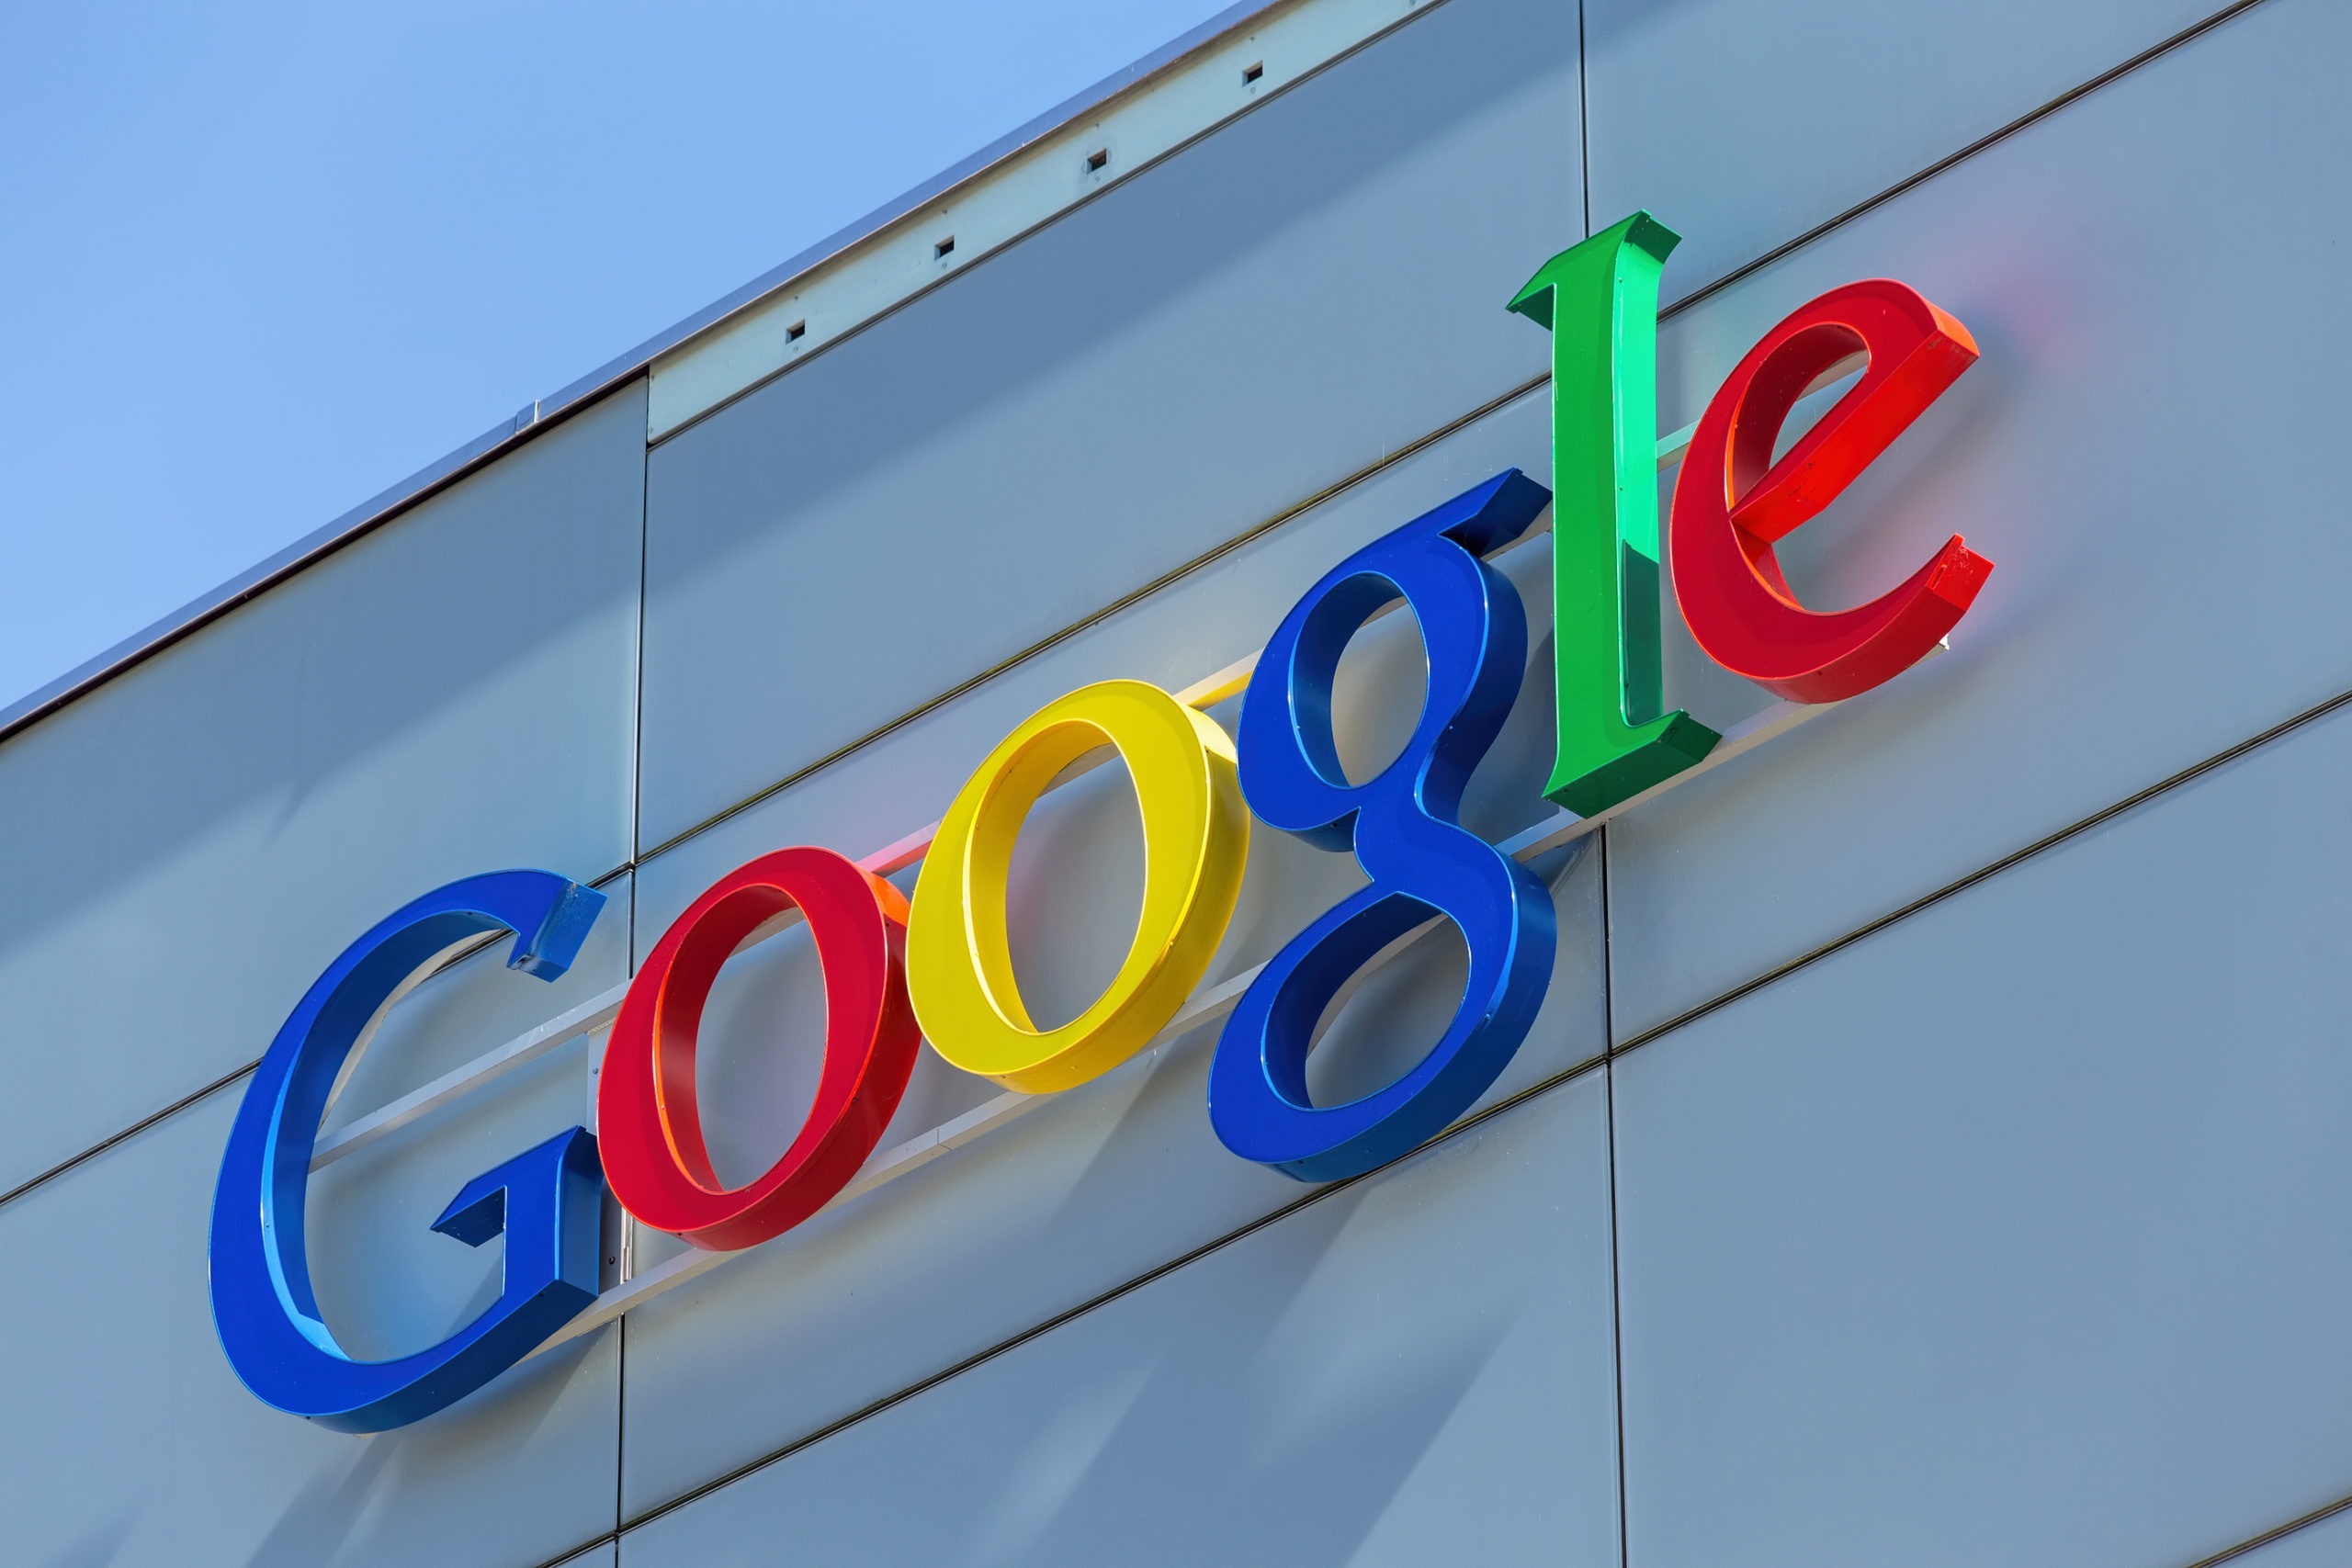 جوجل تحدث خوارزميات محرك البحث لمكافحة الابتزاز عبر الإنترنت